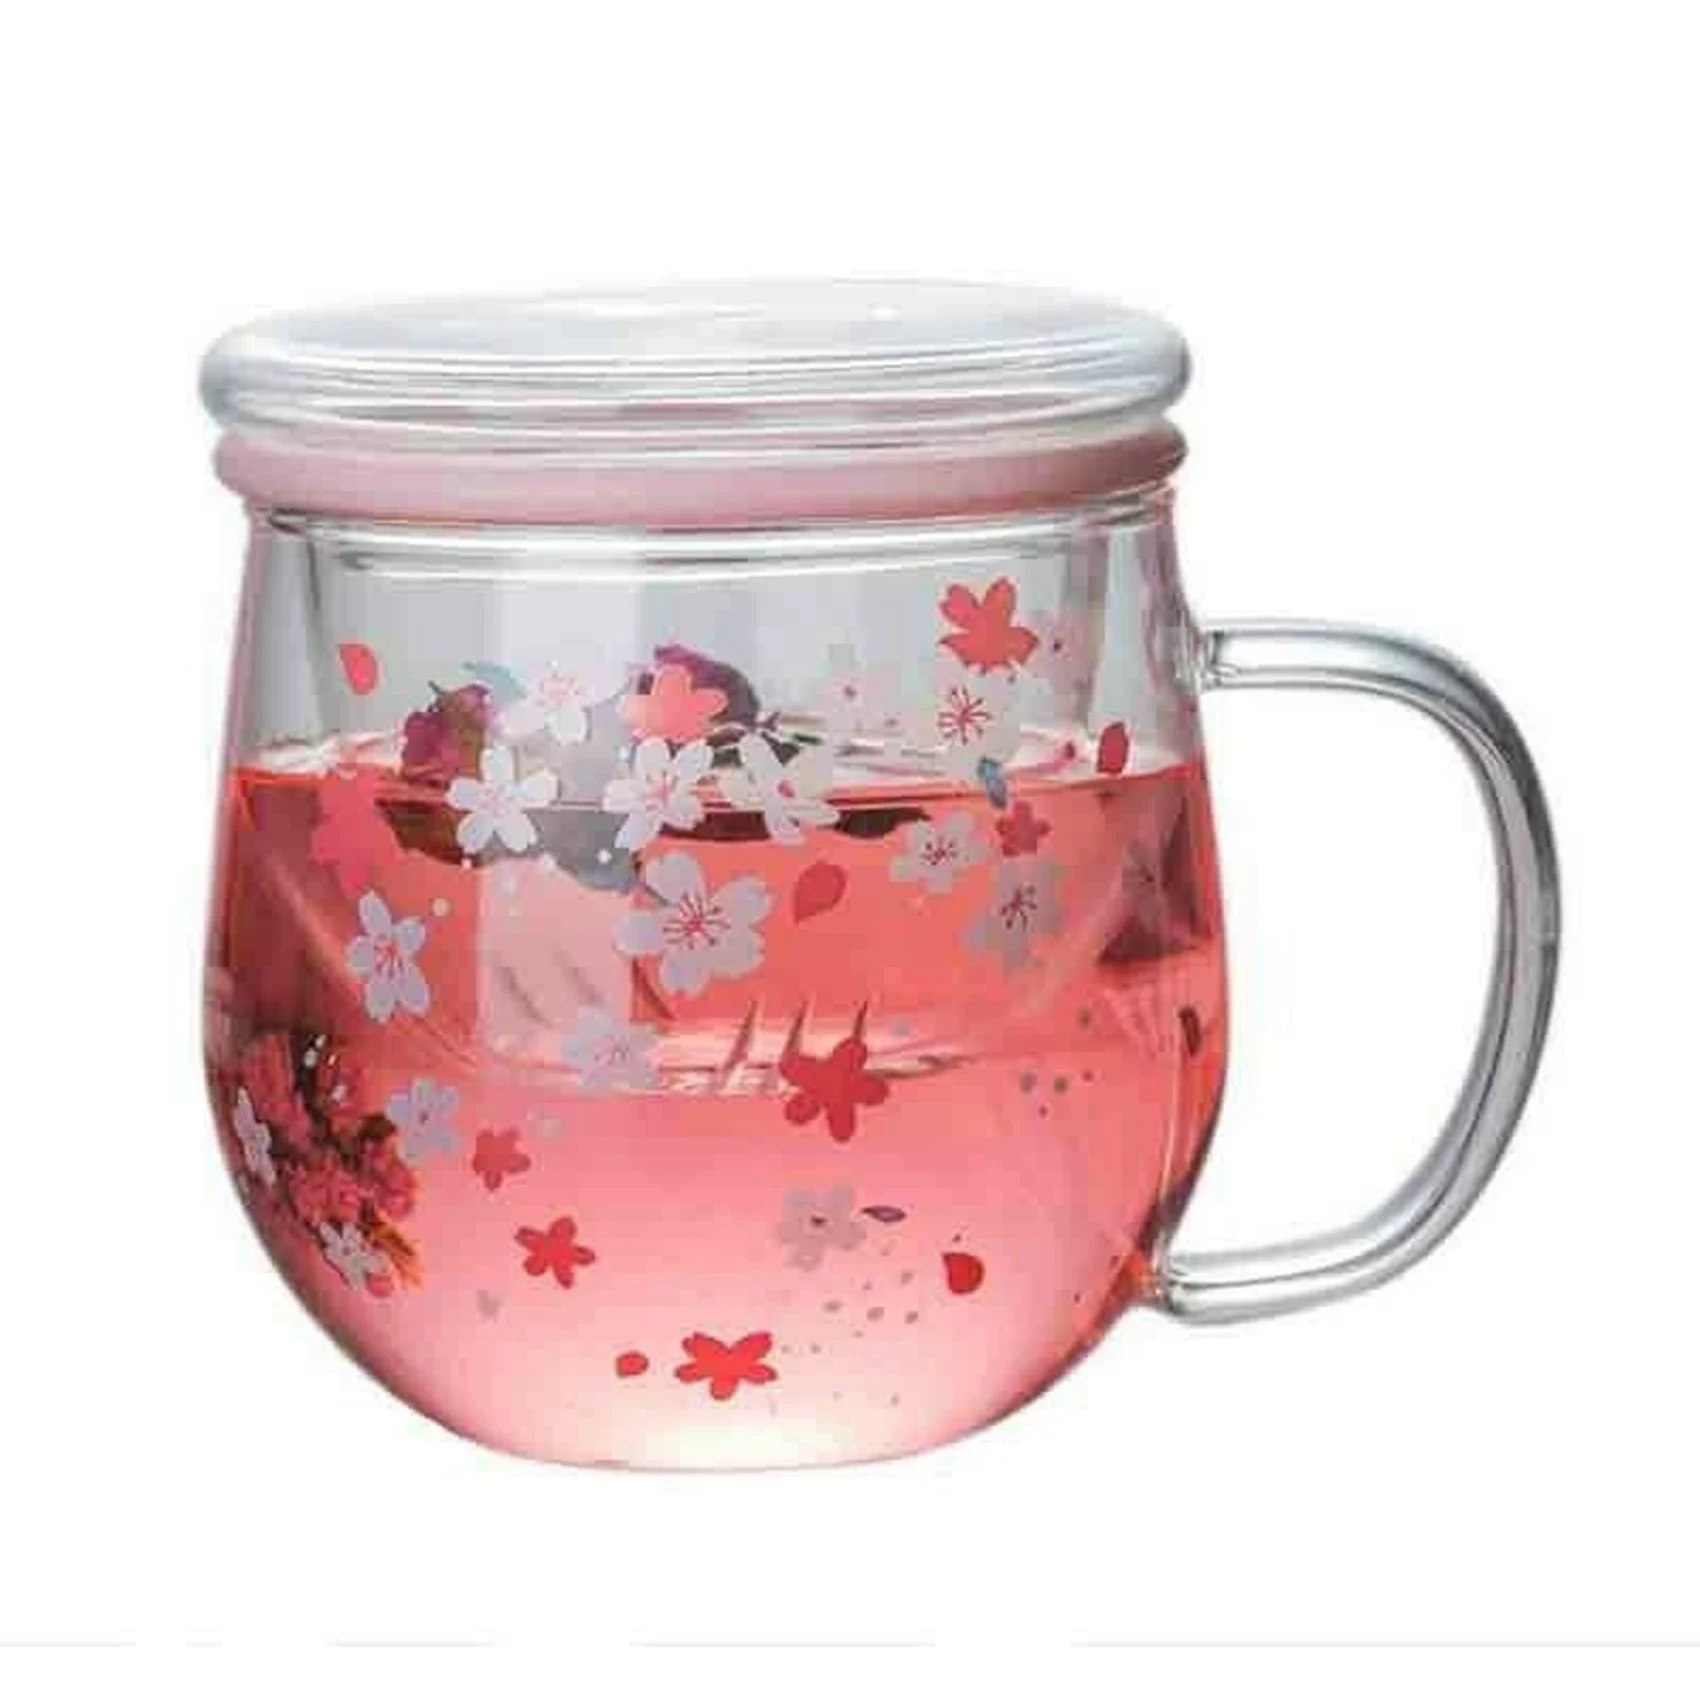 

Стеклянная Кружка Sakura, стеклянная кружка с фильтром для заваривания чая и крышкой, Набор чашек с цветами вишни, Цветочная чашка, 300 мл, стаканы для питья